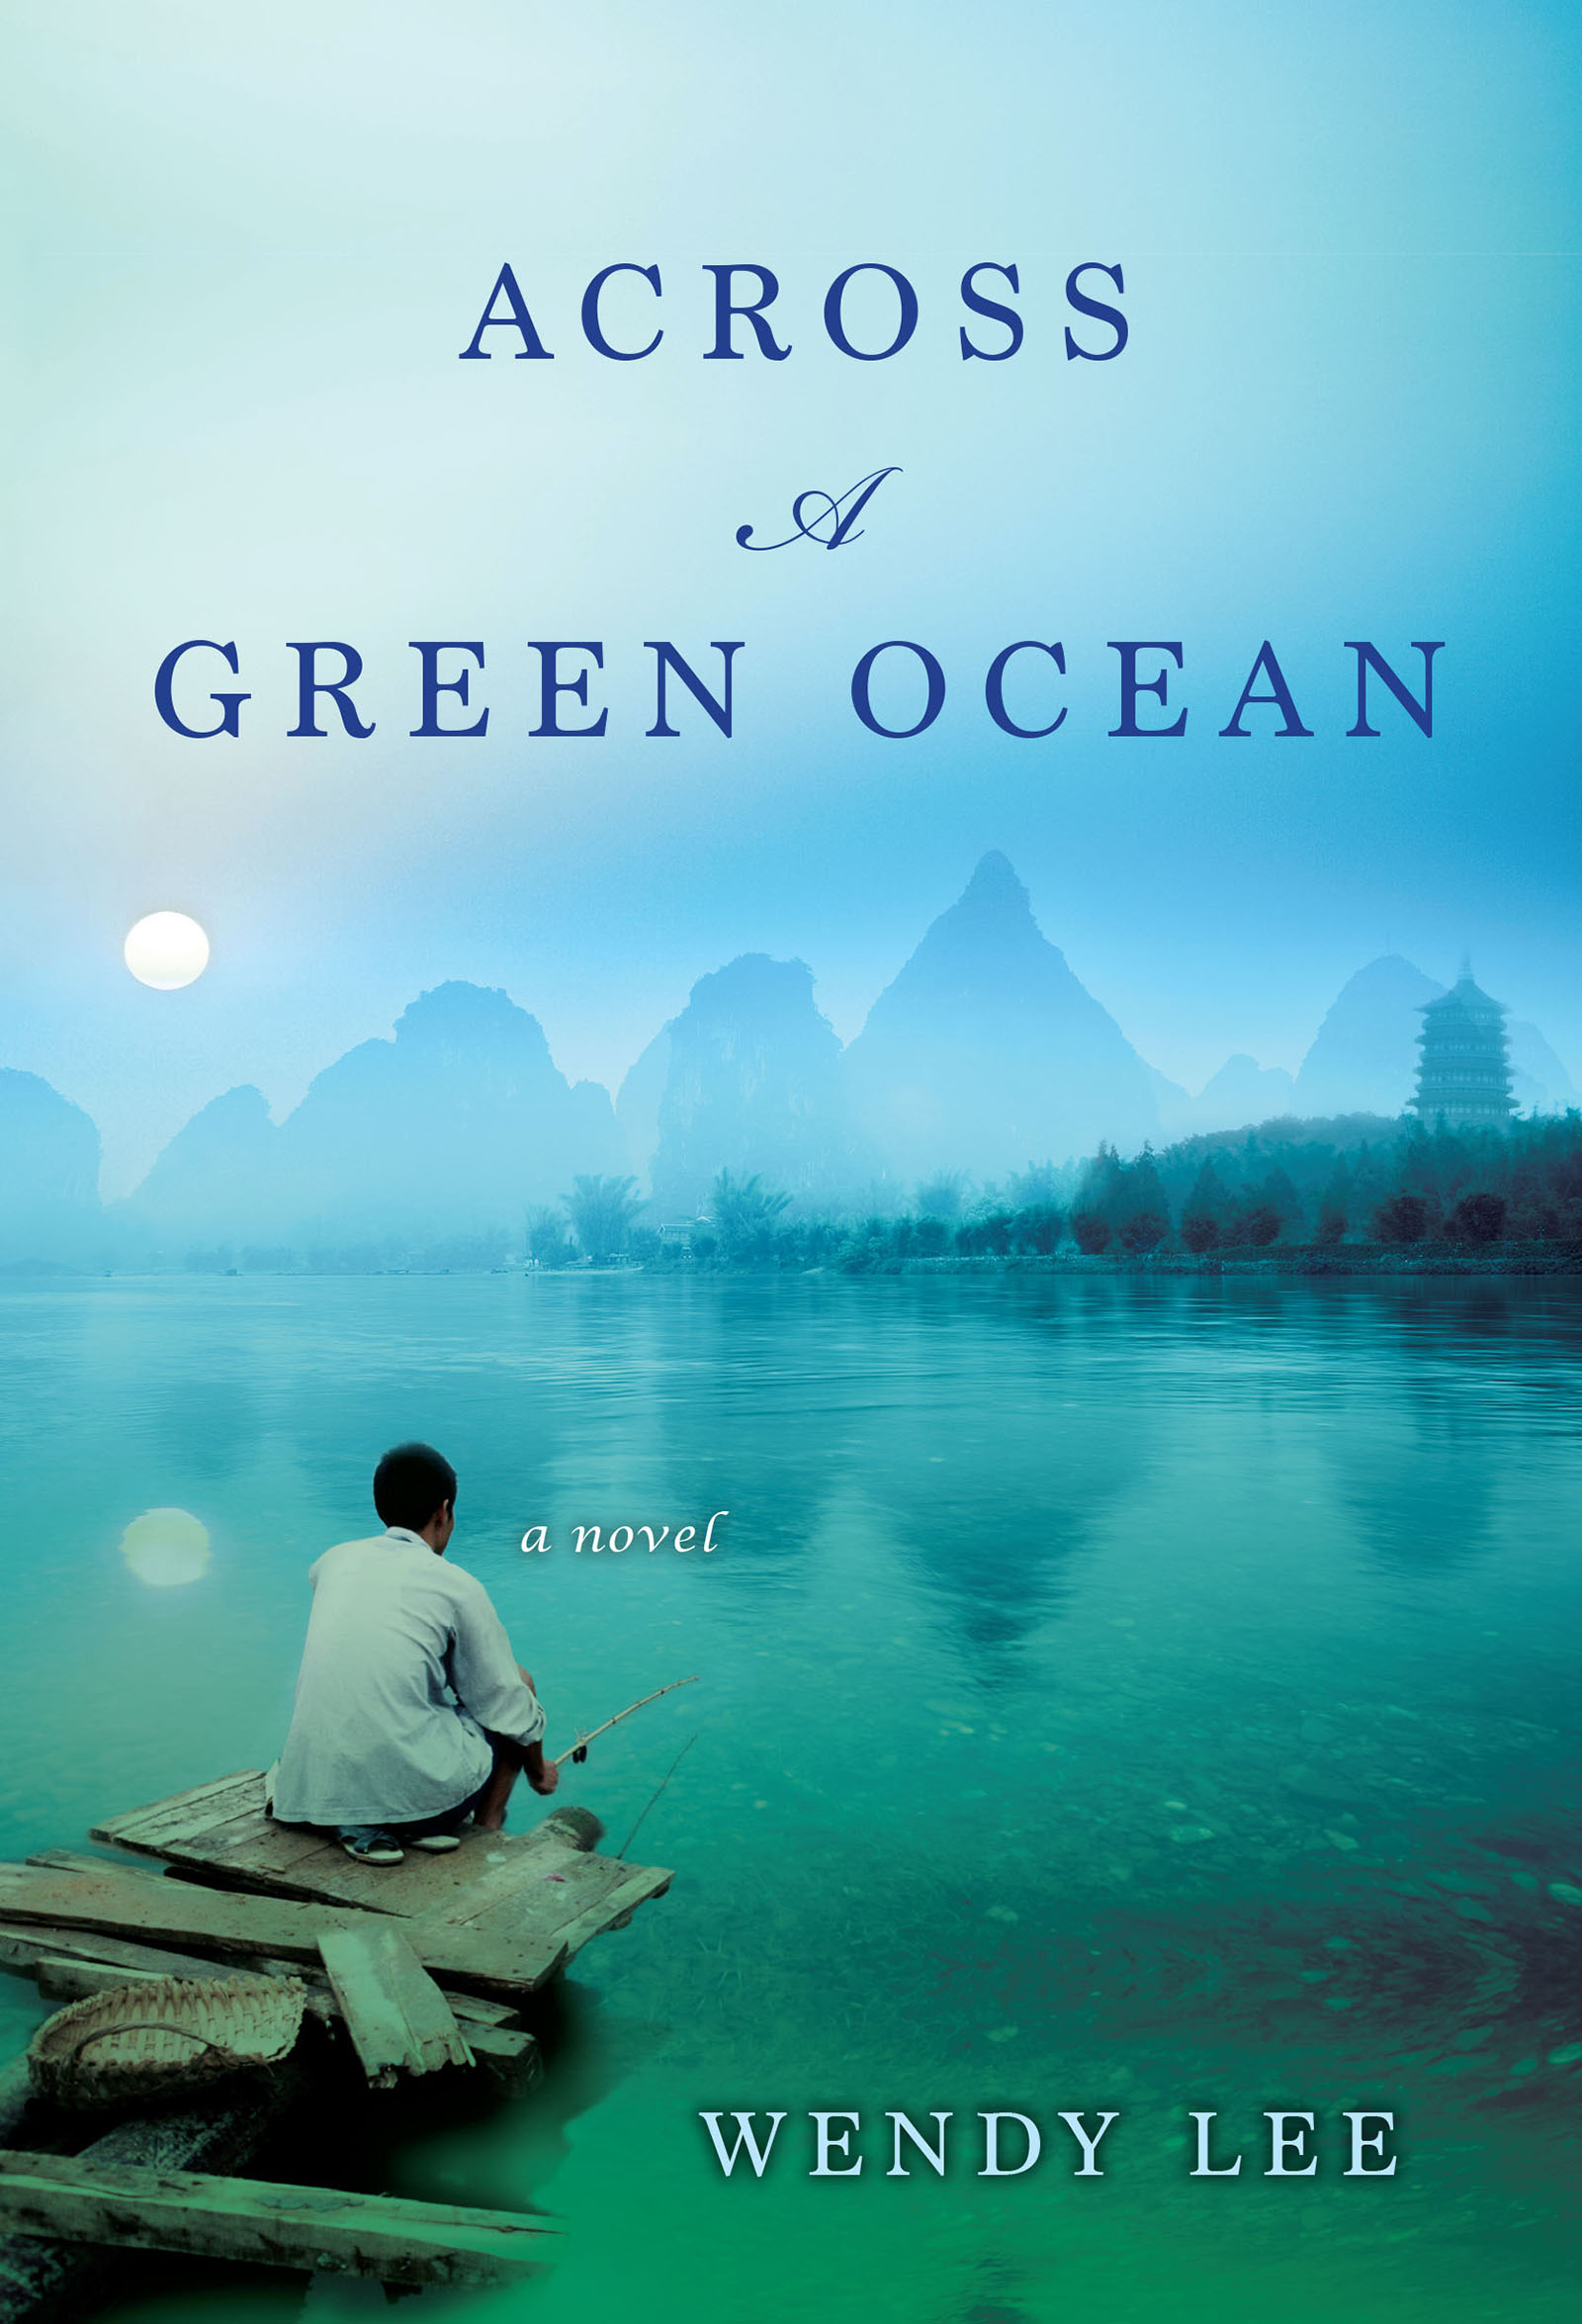 Across a green ocean cover image